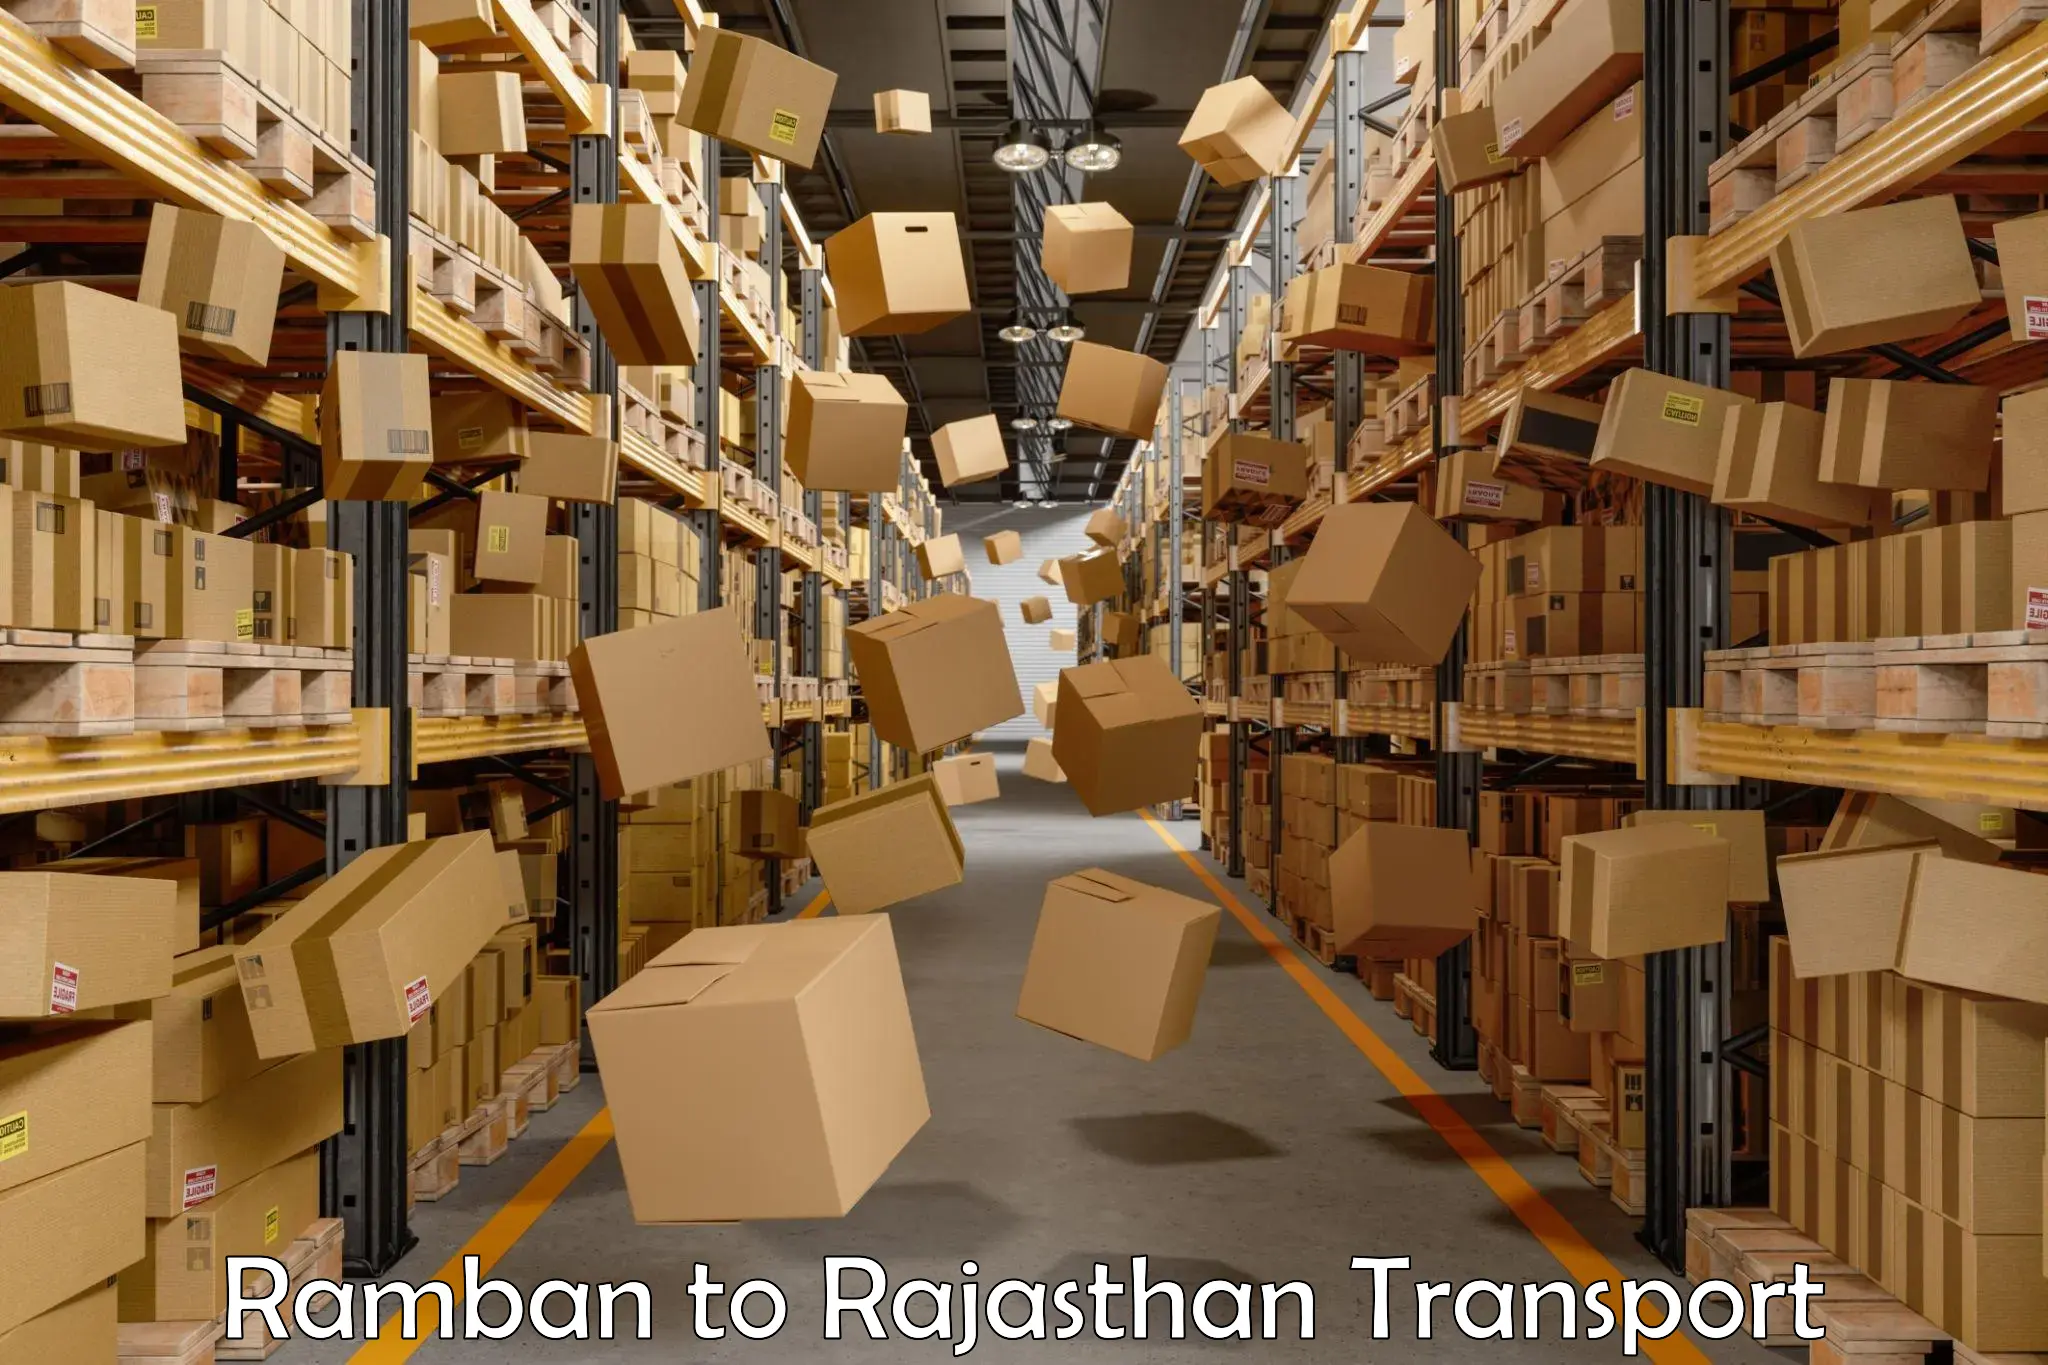 Truck transport companies in India Ramban to Pratapgarh Rajasthan